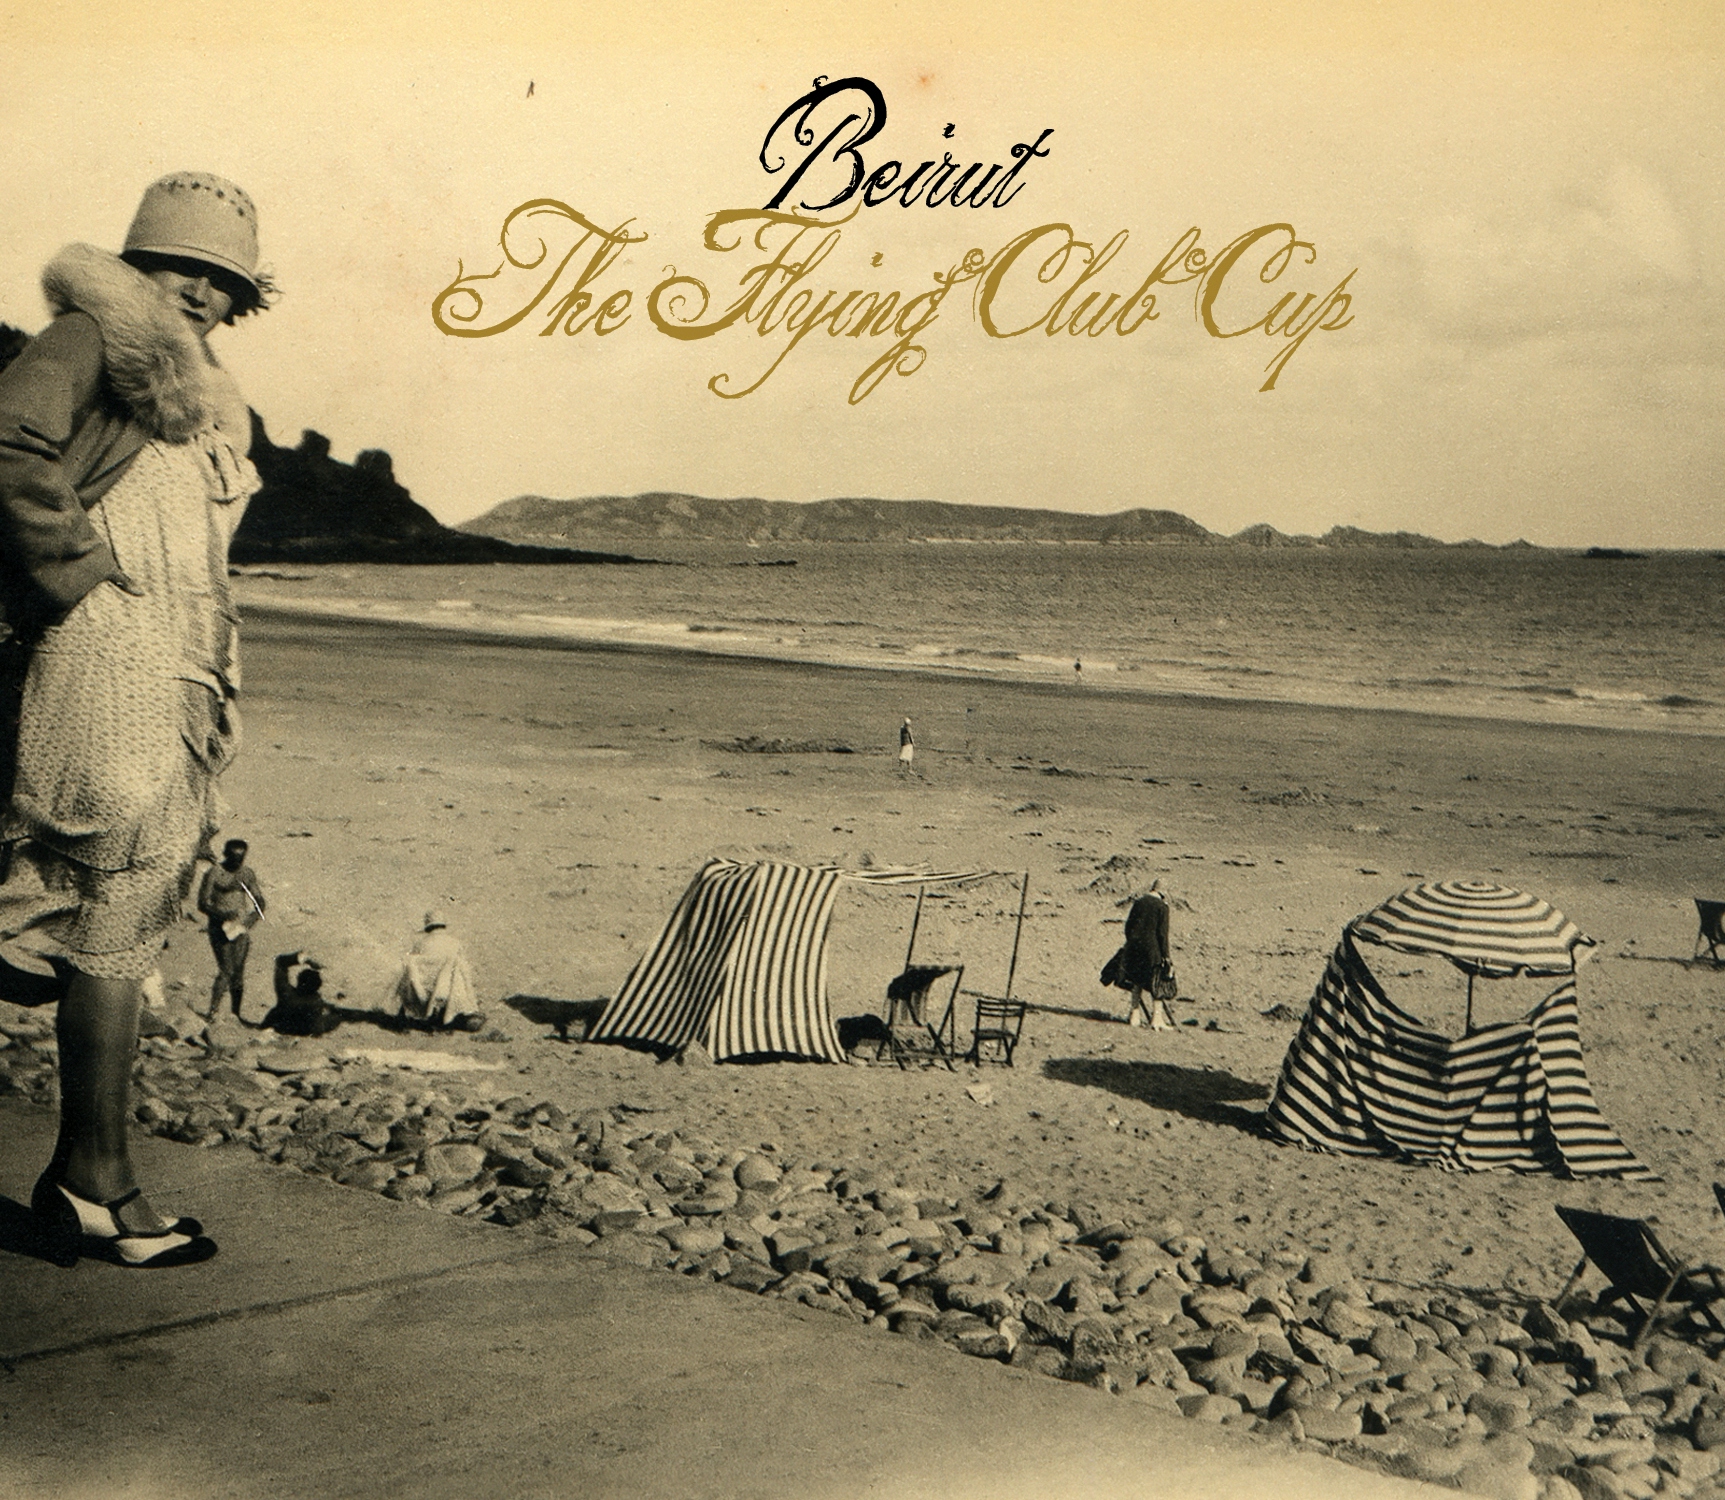 Album artwork for Album artwork for The Flying Club Cup by Beirut by The Flying Club Cup - Beirut